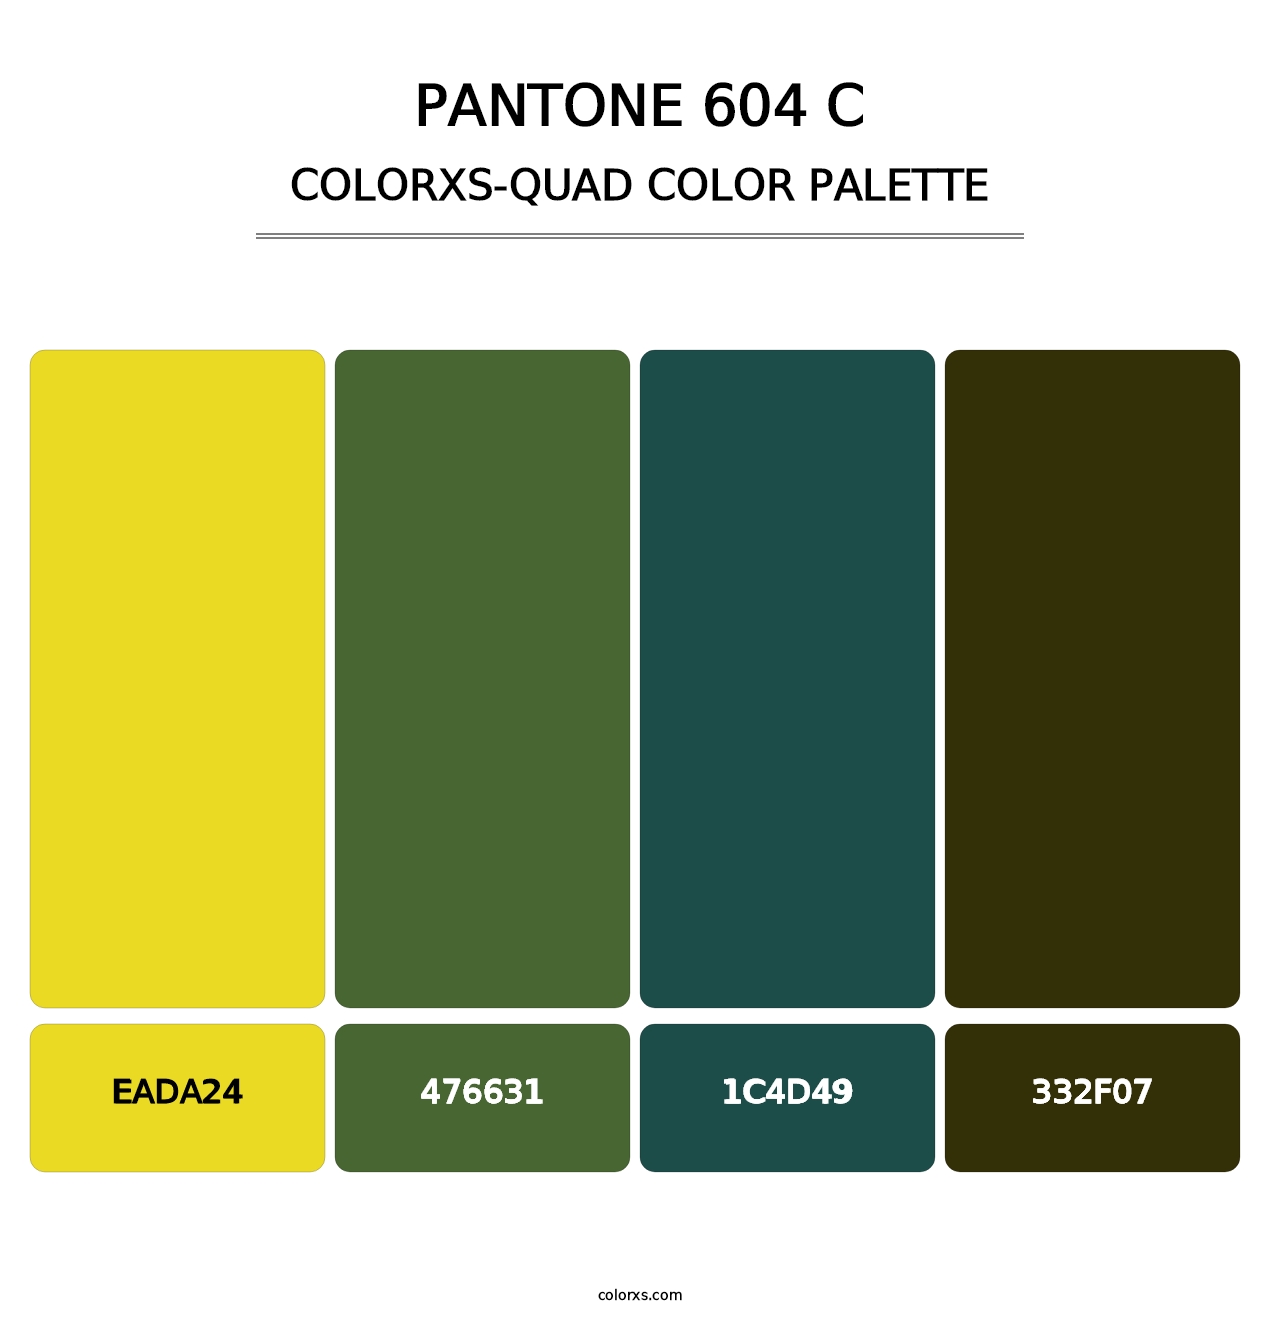 PANTONE 604 C - Colorxs Quad Palette